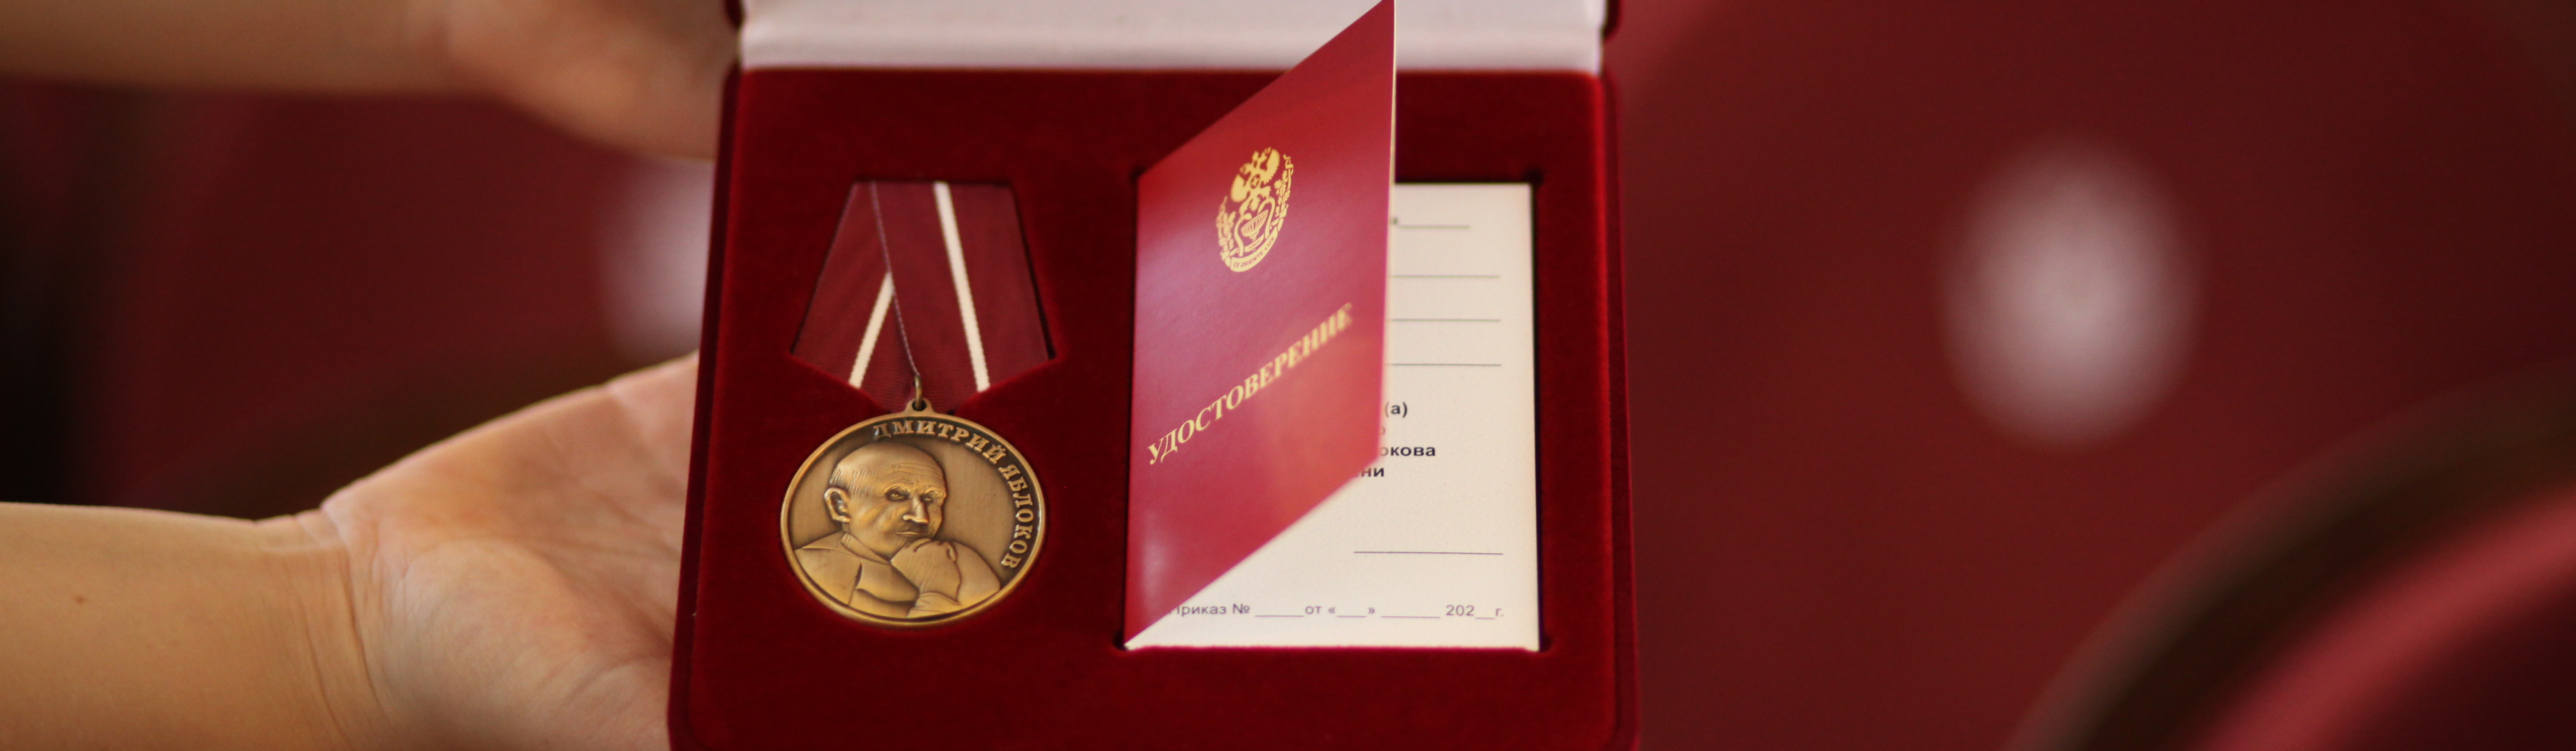 За служение людям: сотрудники и выпускники СибГМУ впервые награждены «Медалями Дмитрия Яблокова»  